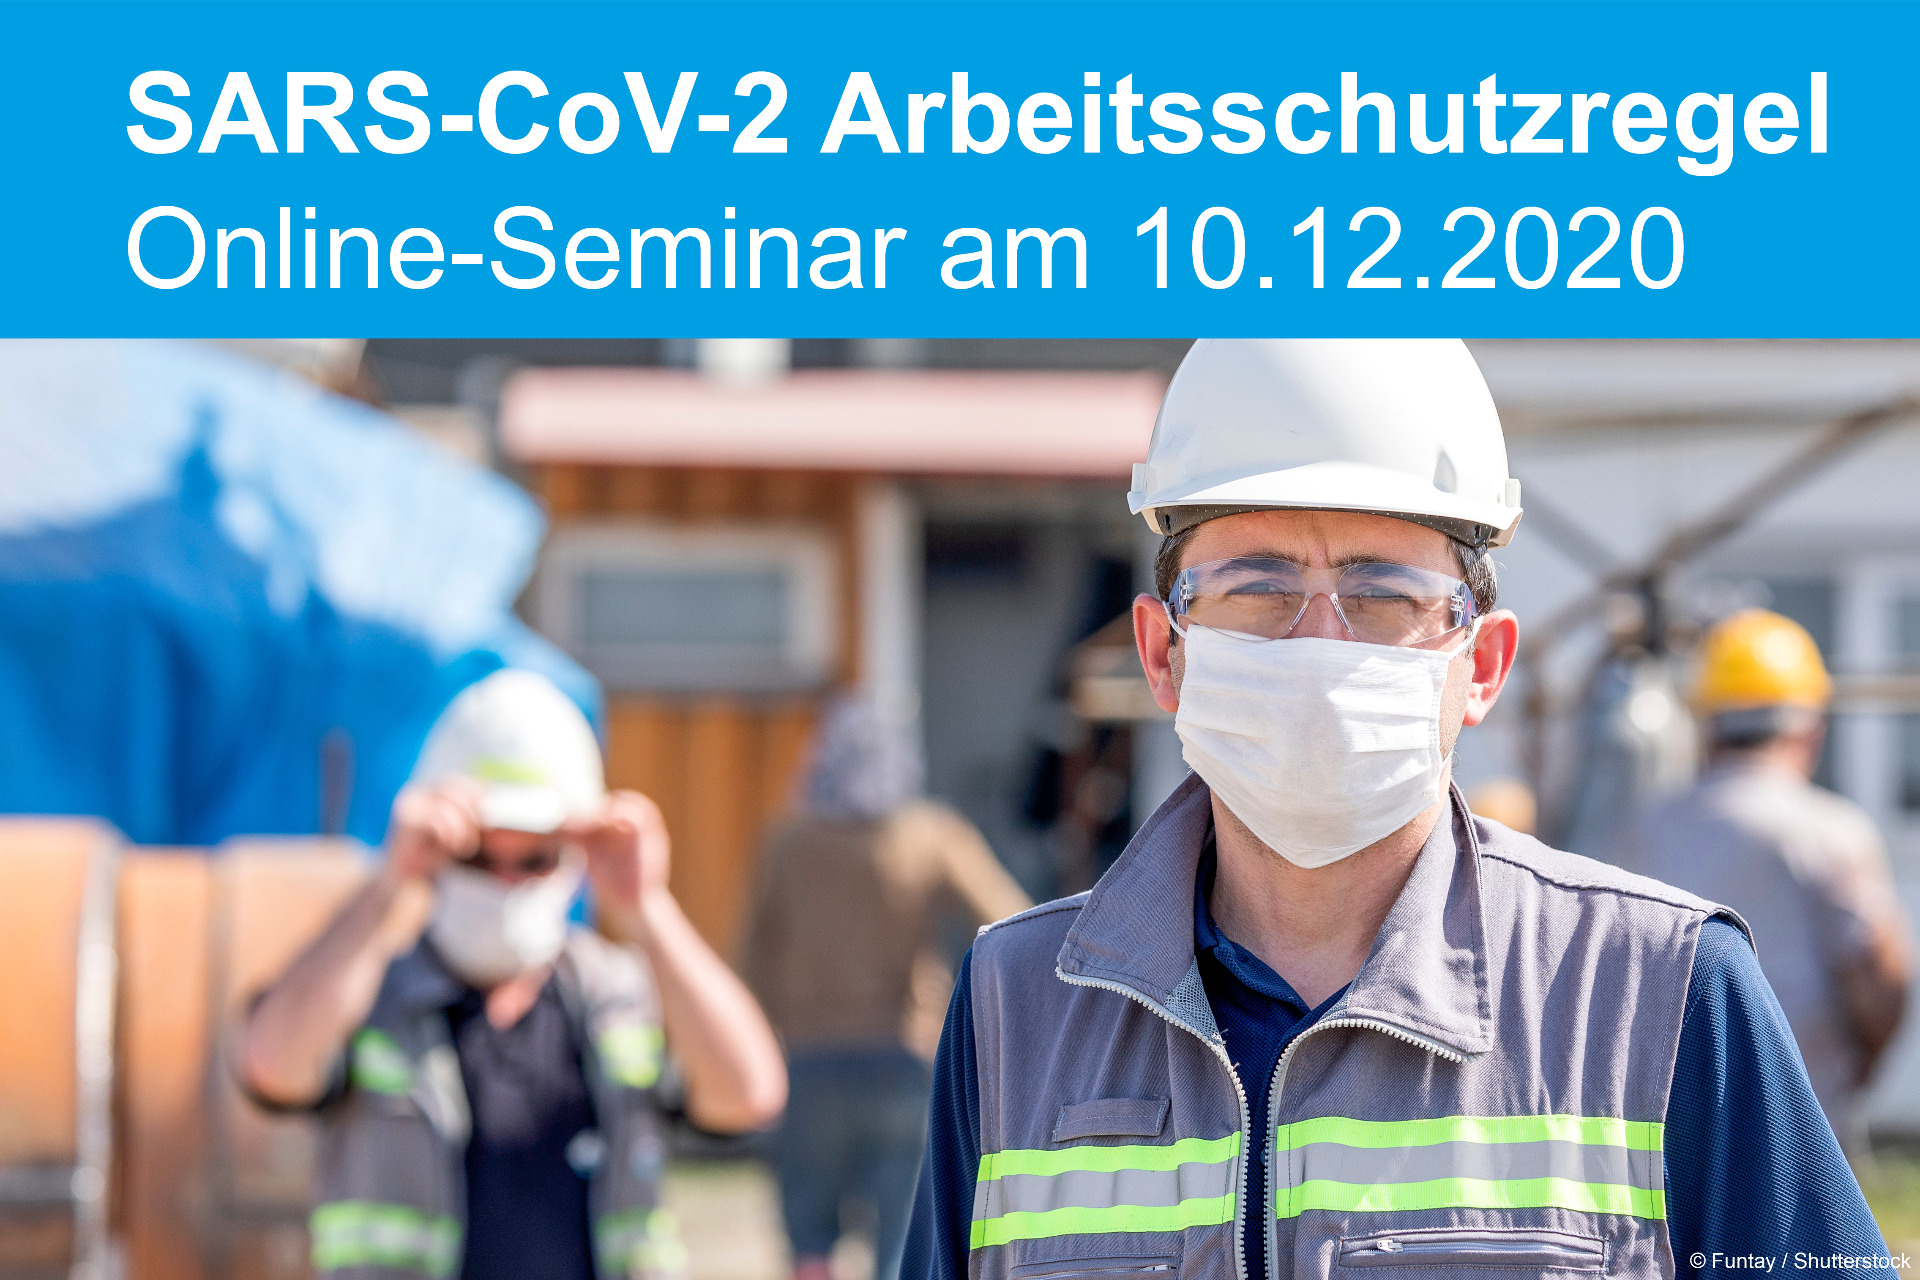 SARS-CoV-2 Arbeitsschutzregel - Mit hohem Schutzniveau in der Corona-Pandemie arbeiten - 10.12.2020 - Online-Seminar